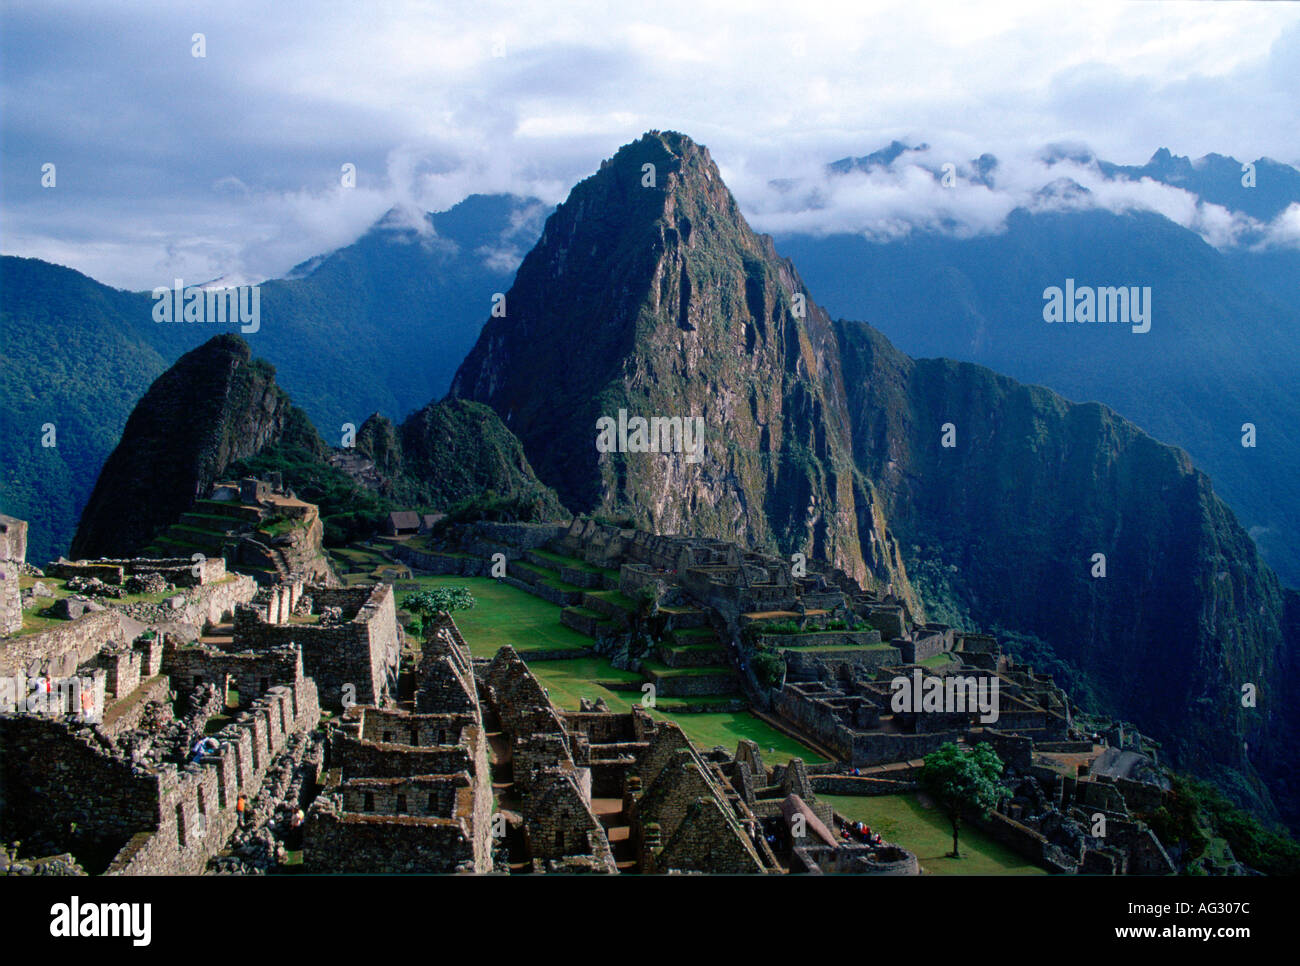 Machu Picchu ruins of the Inca citadel discovered in 1911 in Peru South America Stock Photo